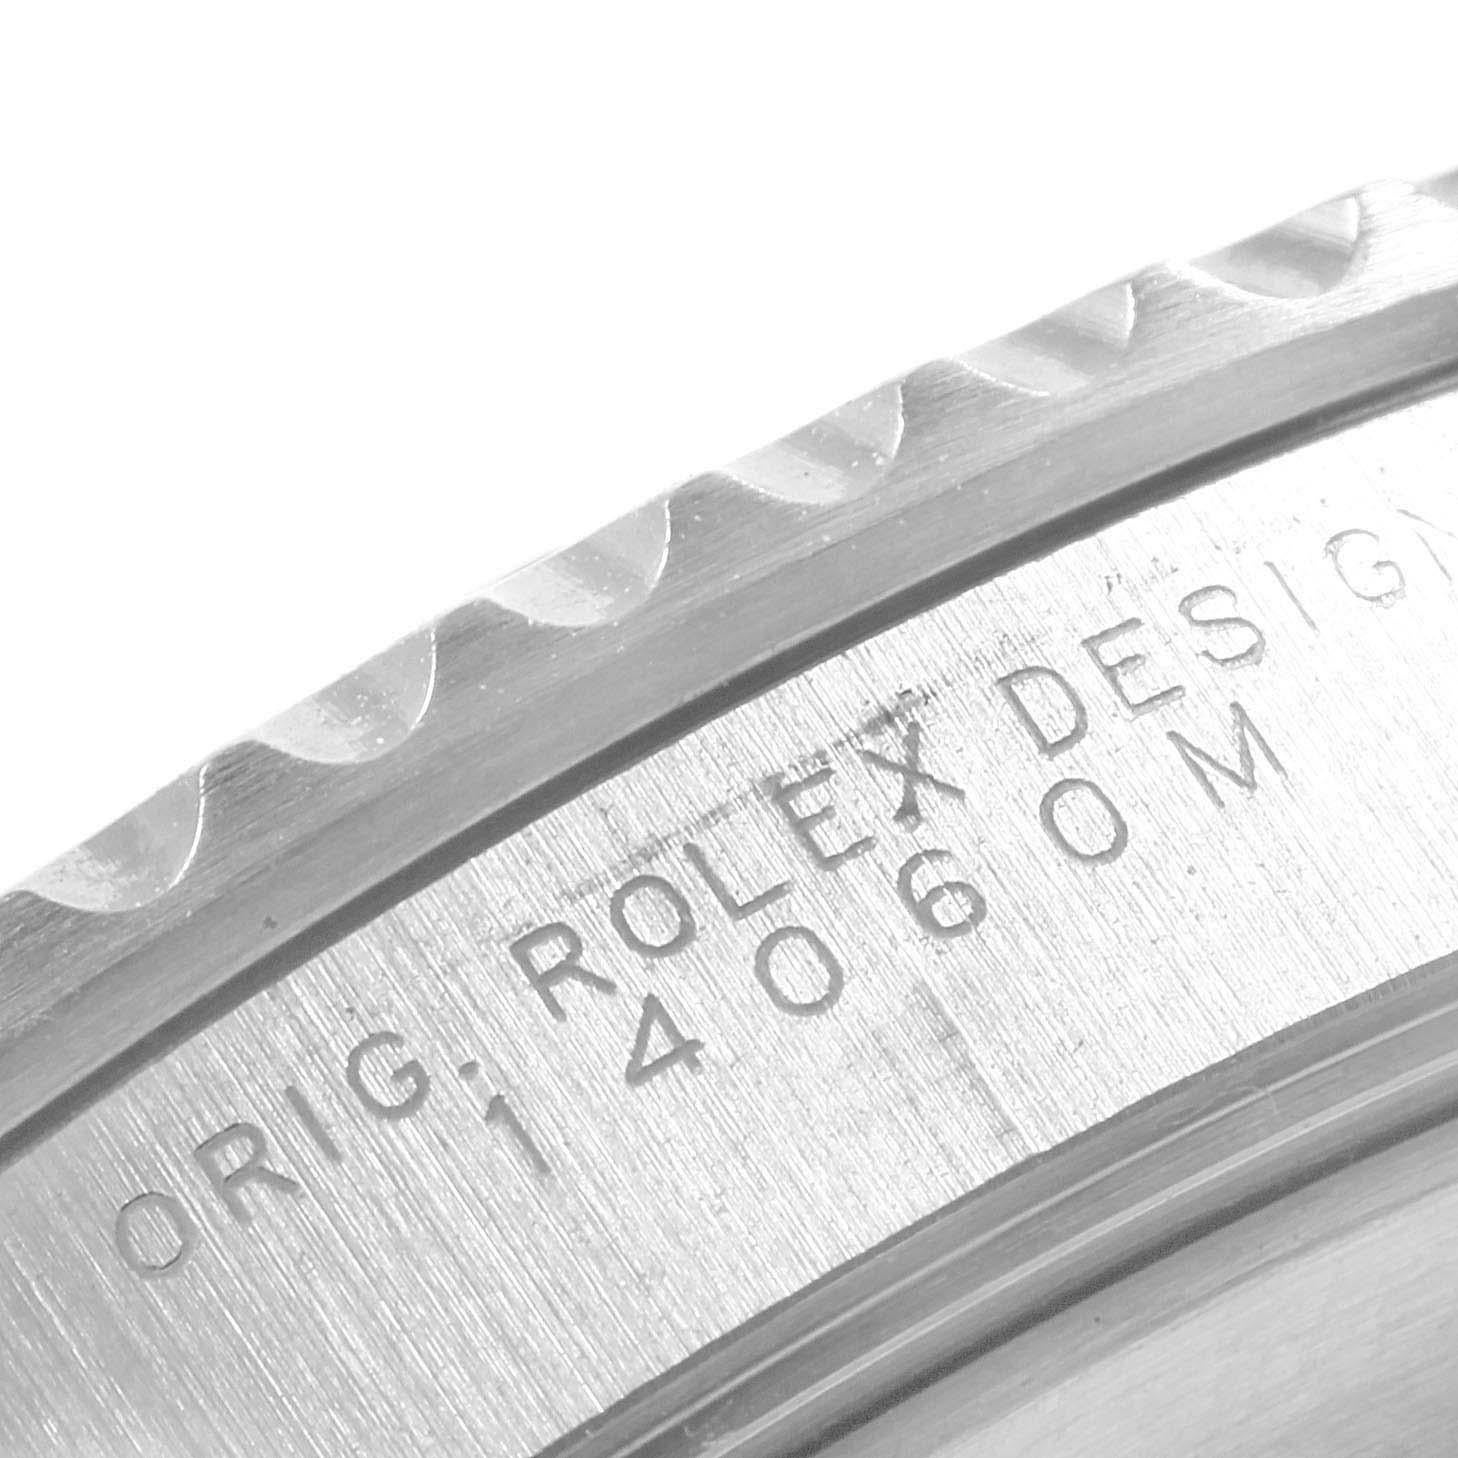 Rolex Submariner Non-Date 4 Liner Steel Steel Men's Watch 14060 2